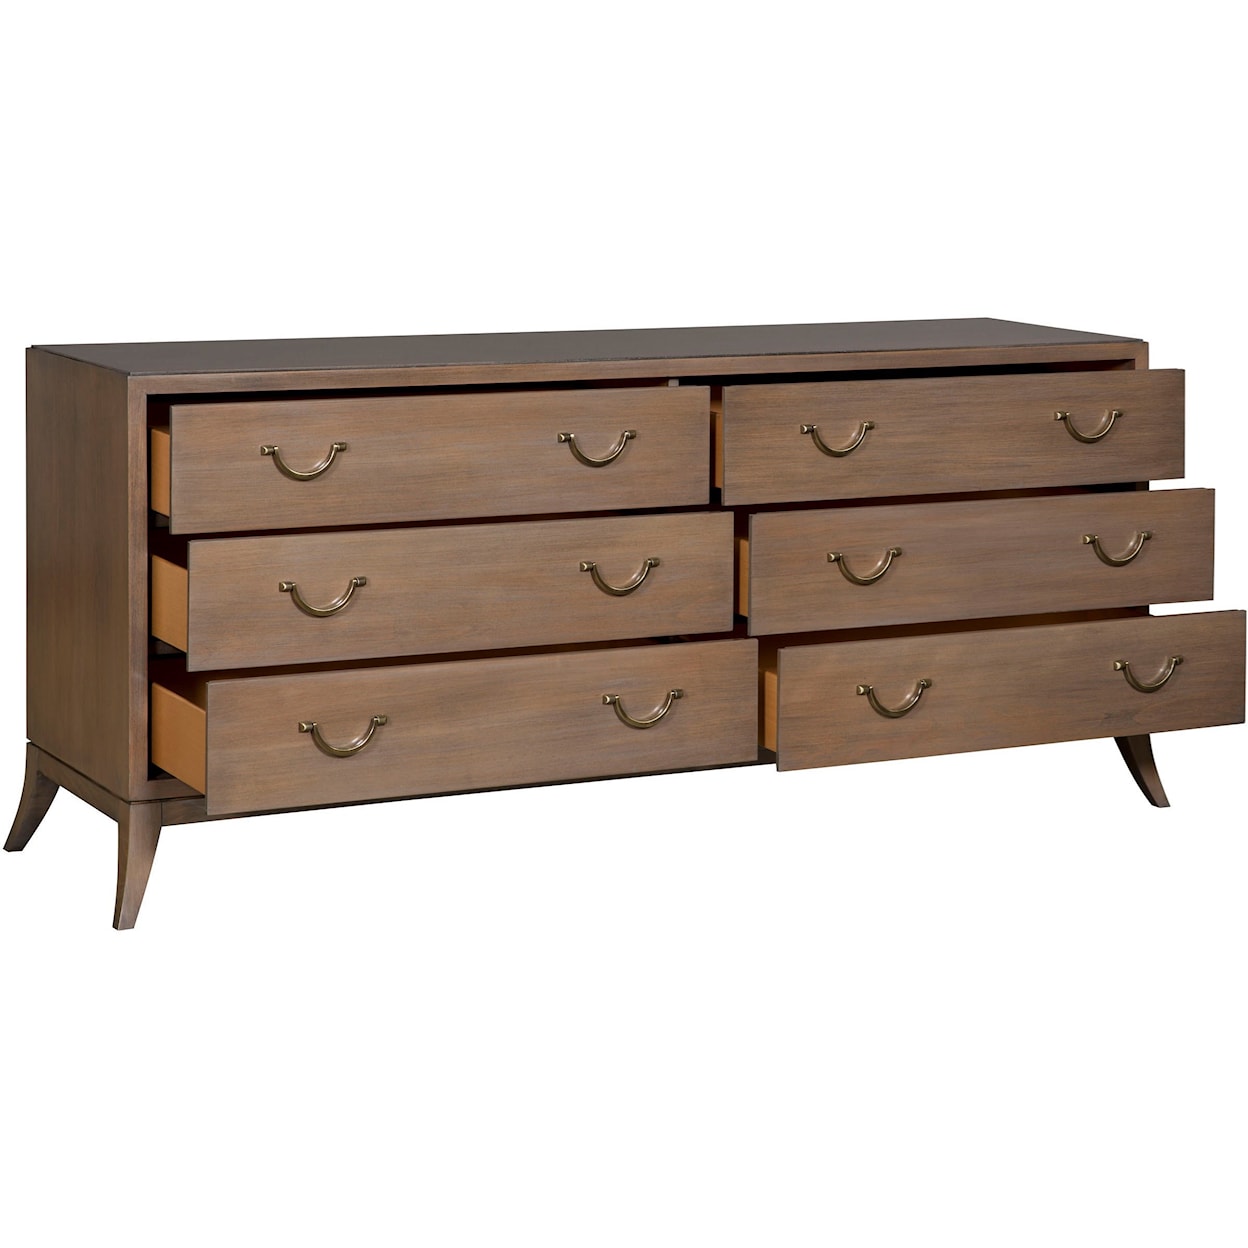 Vanguard Furniture Make it Yours Bedroom Mcguire Dresser